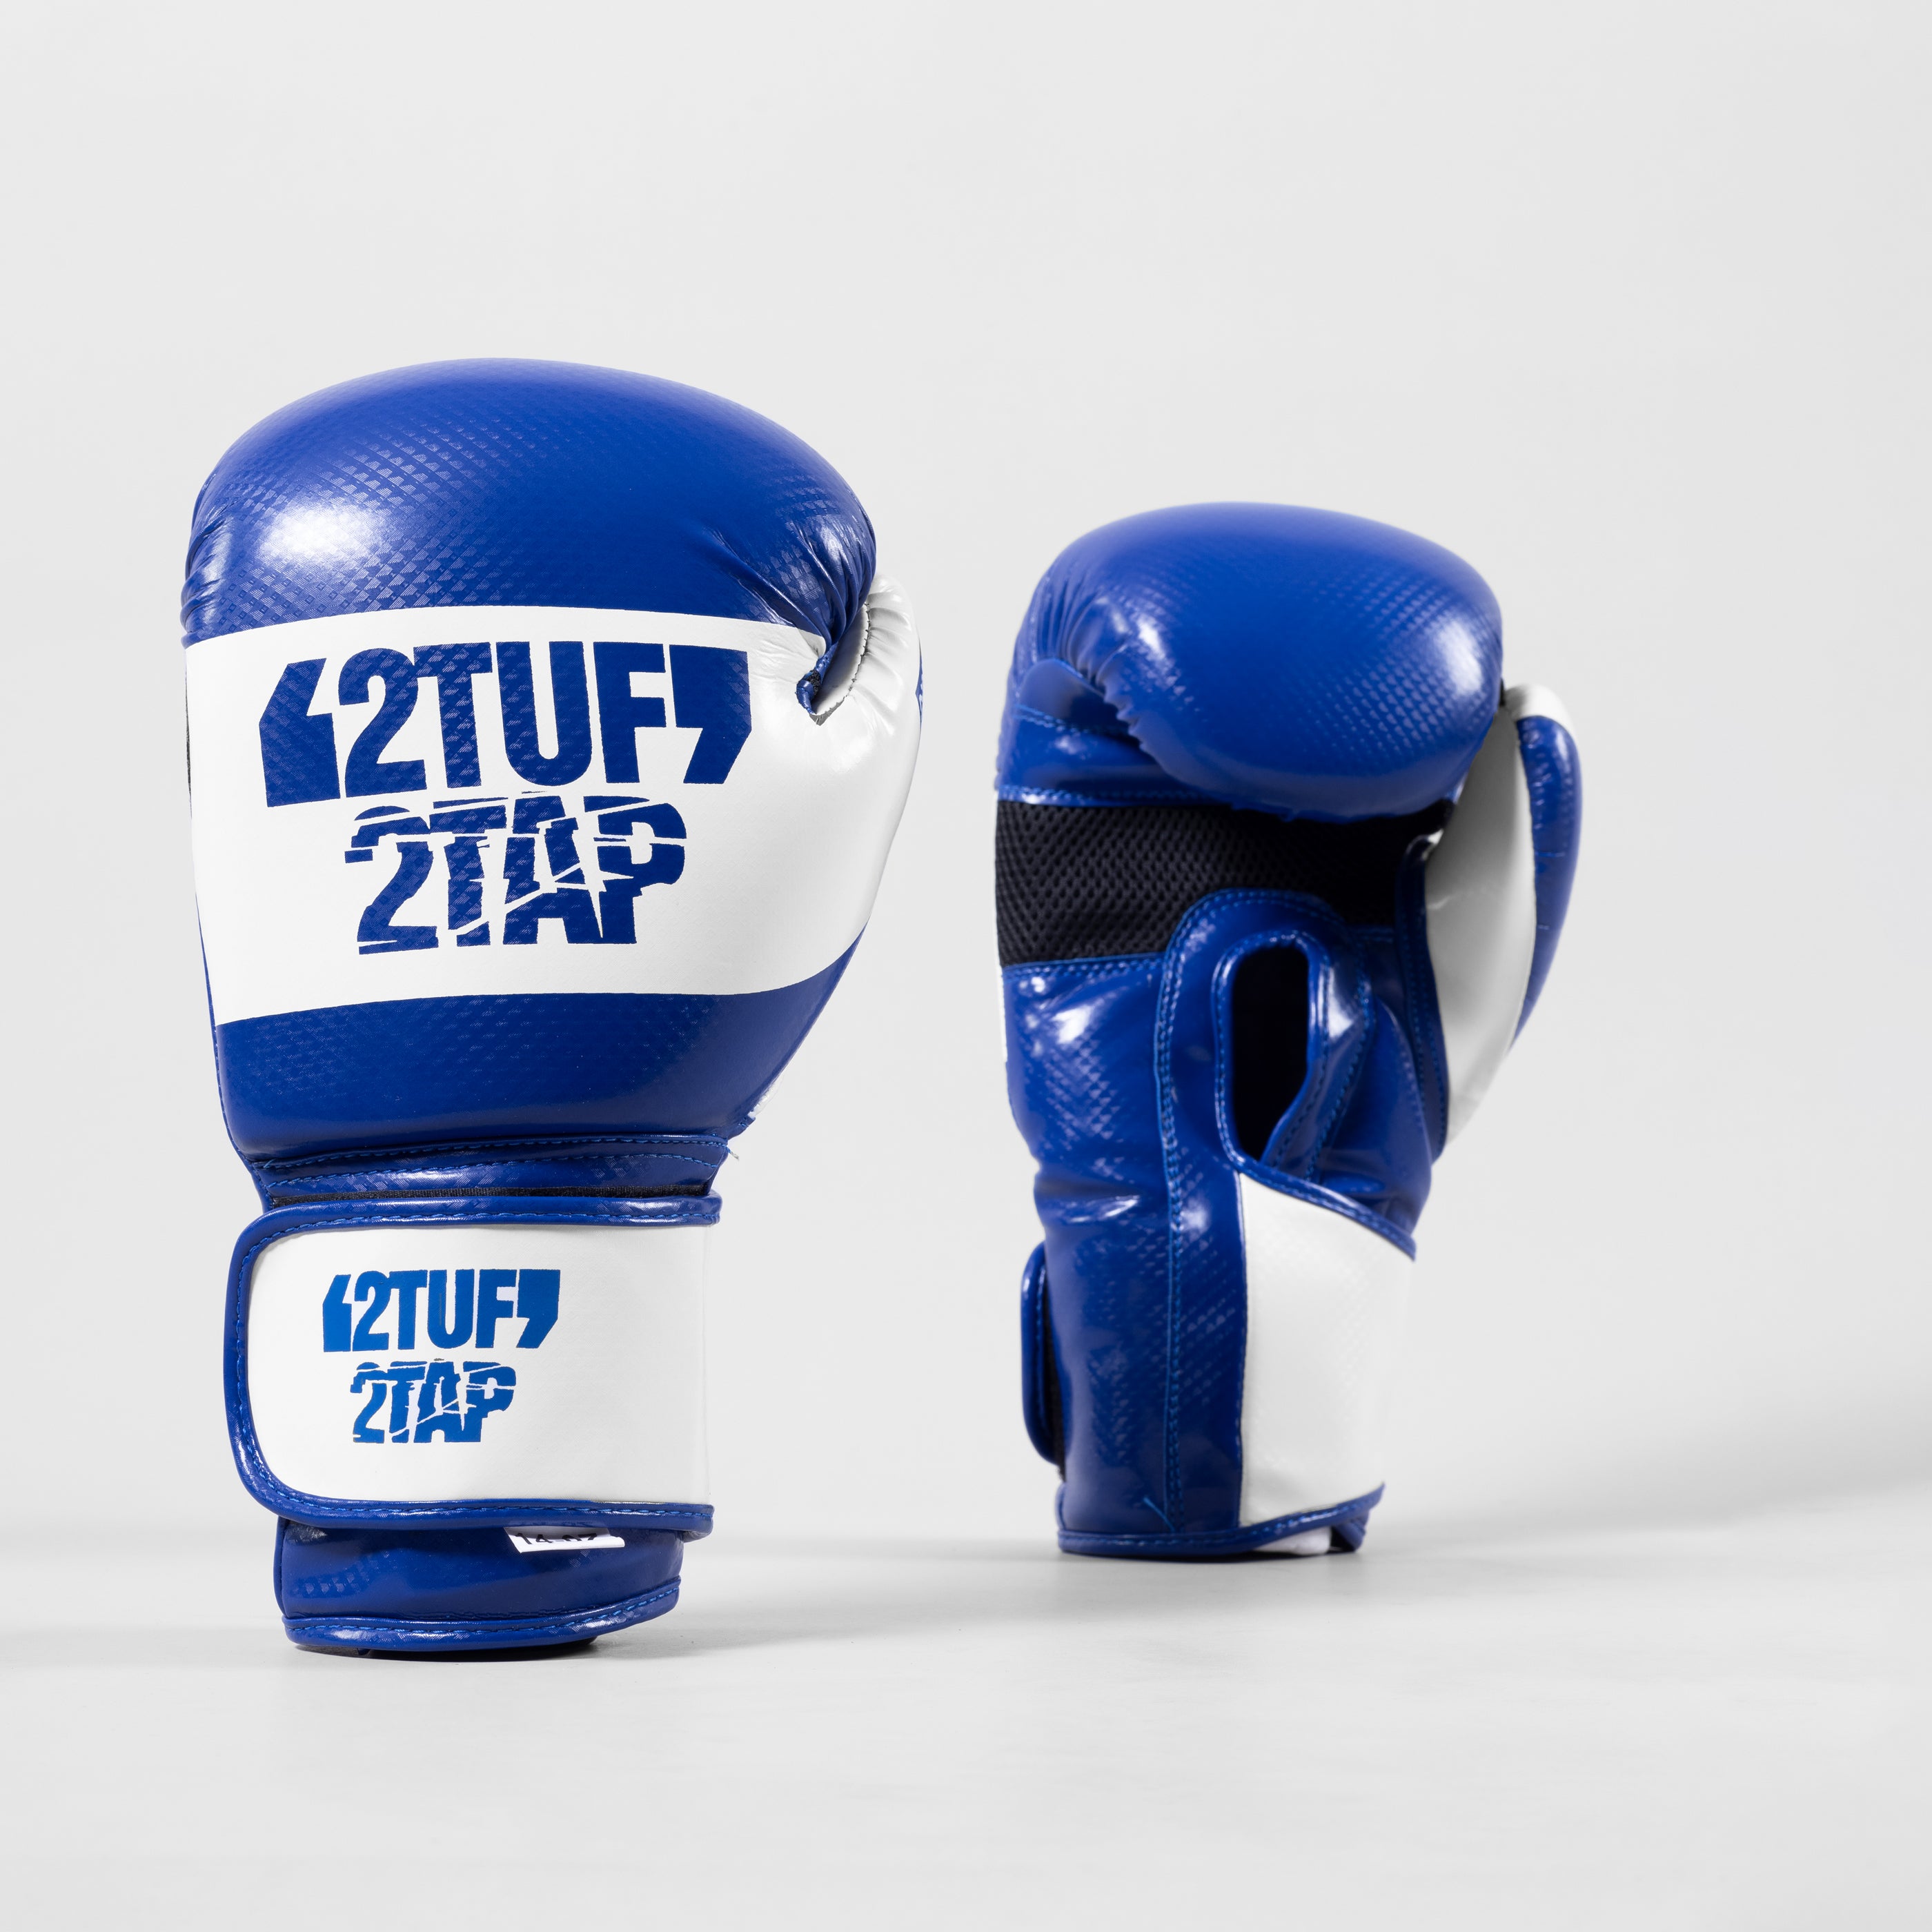 'Resolve' Boxing Gloves - Blue/White 2TUF2TAP